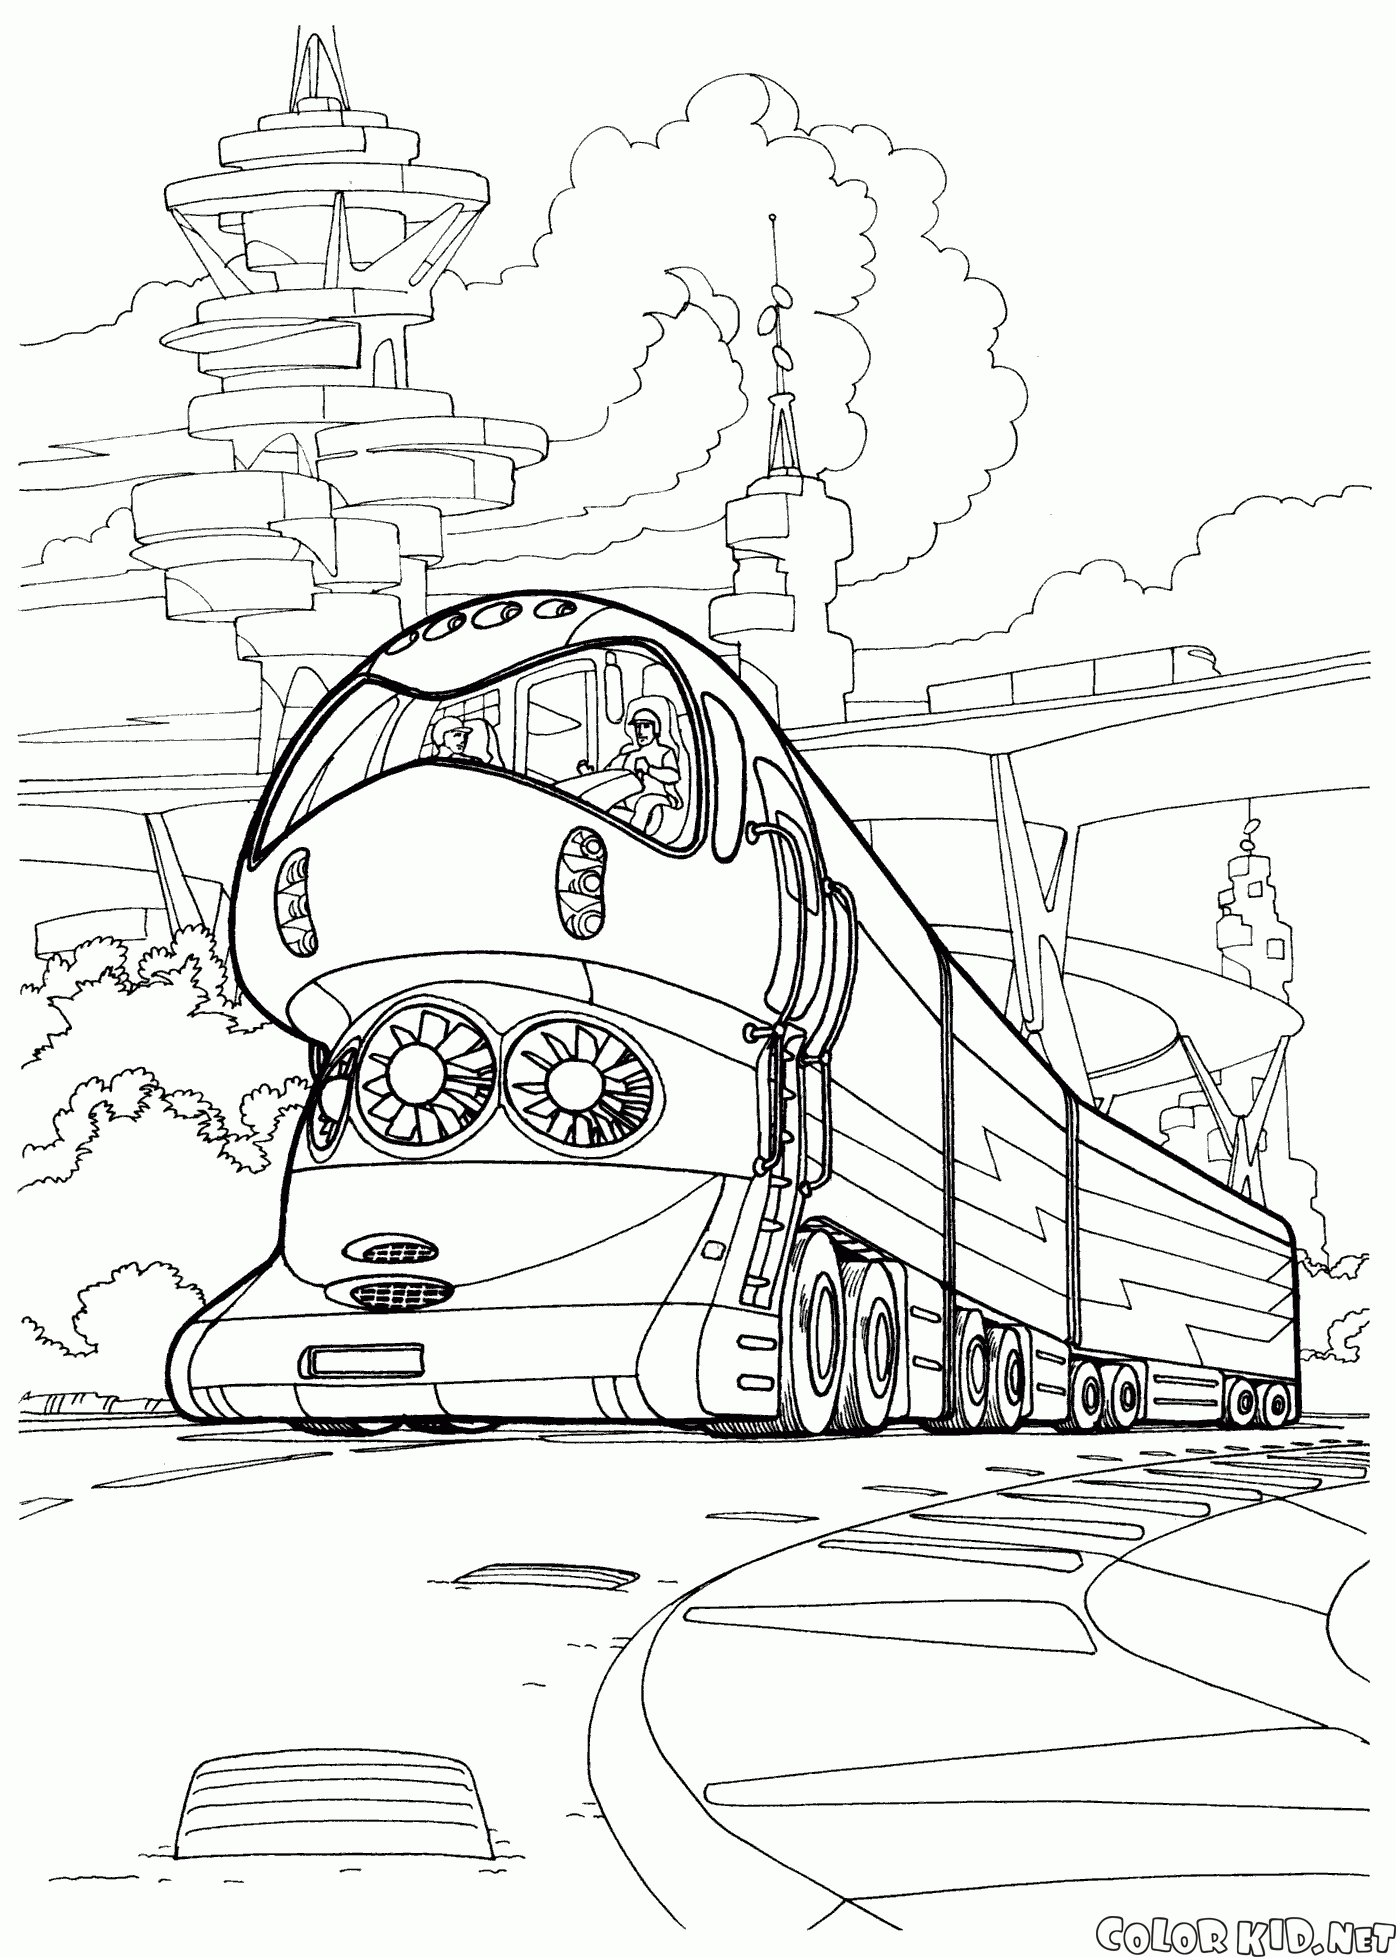 Le train high-tech